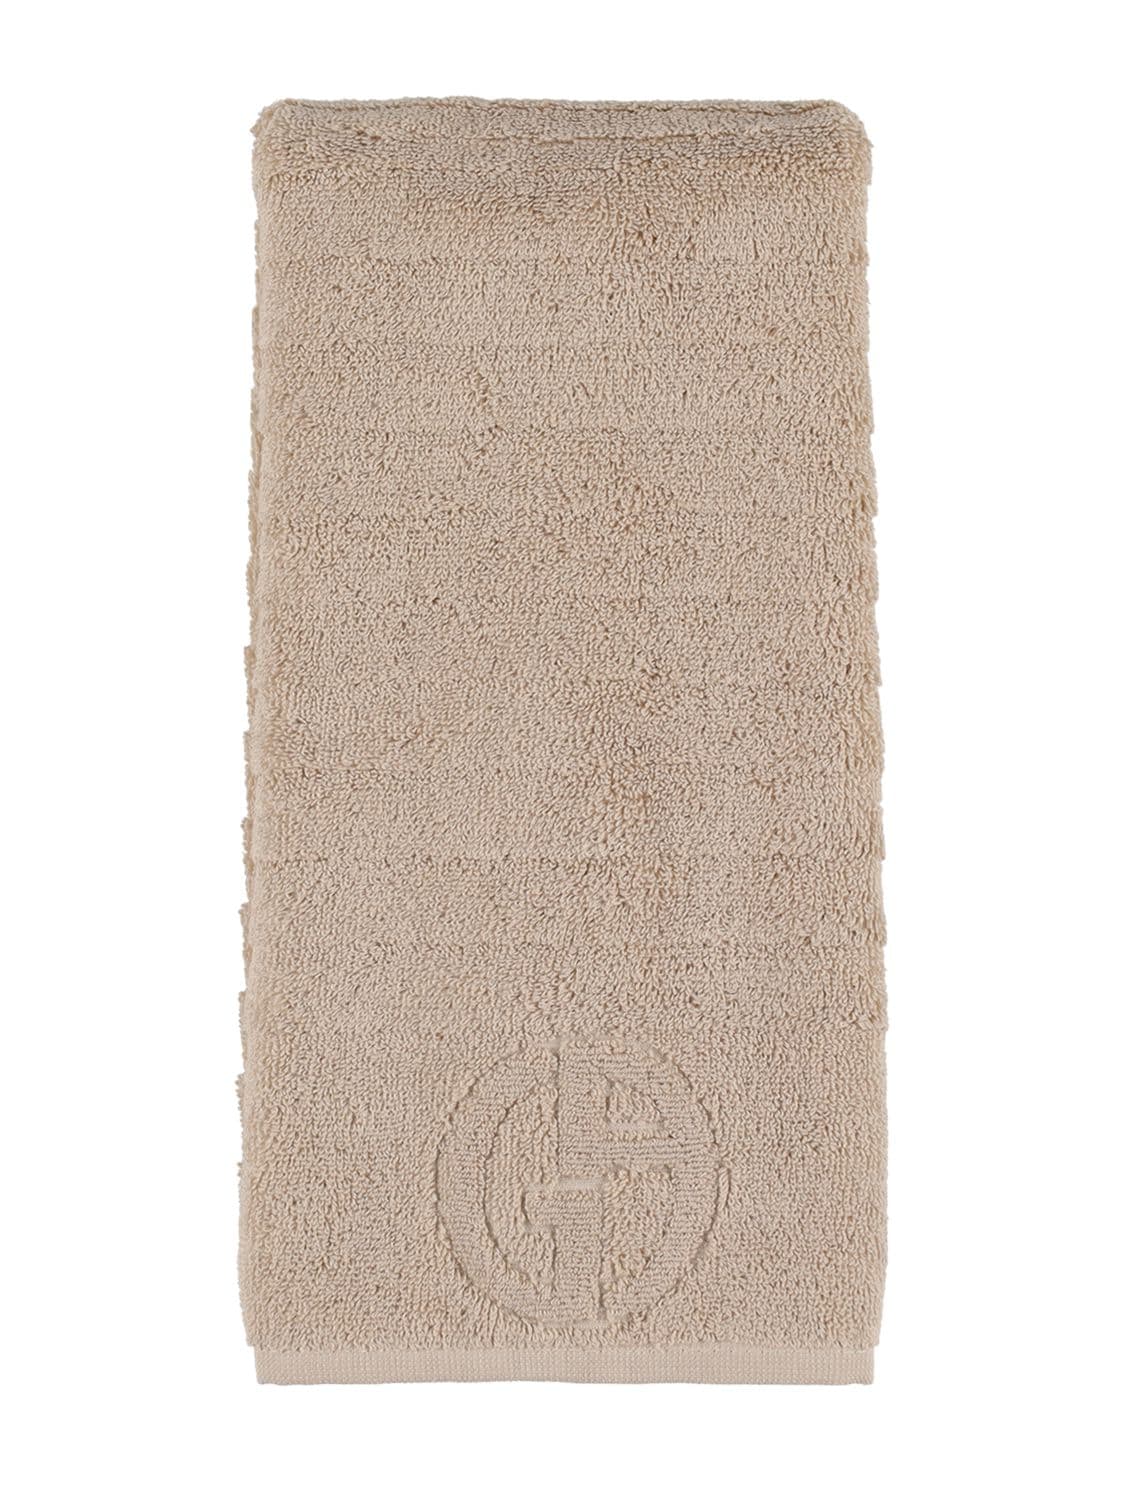 Armani/casa Dorotea Cotton Hand Towel In Dove Grey